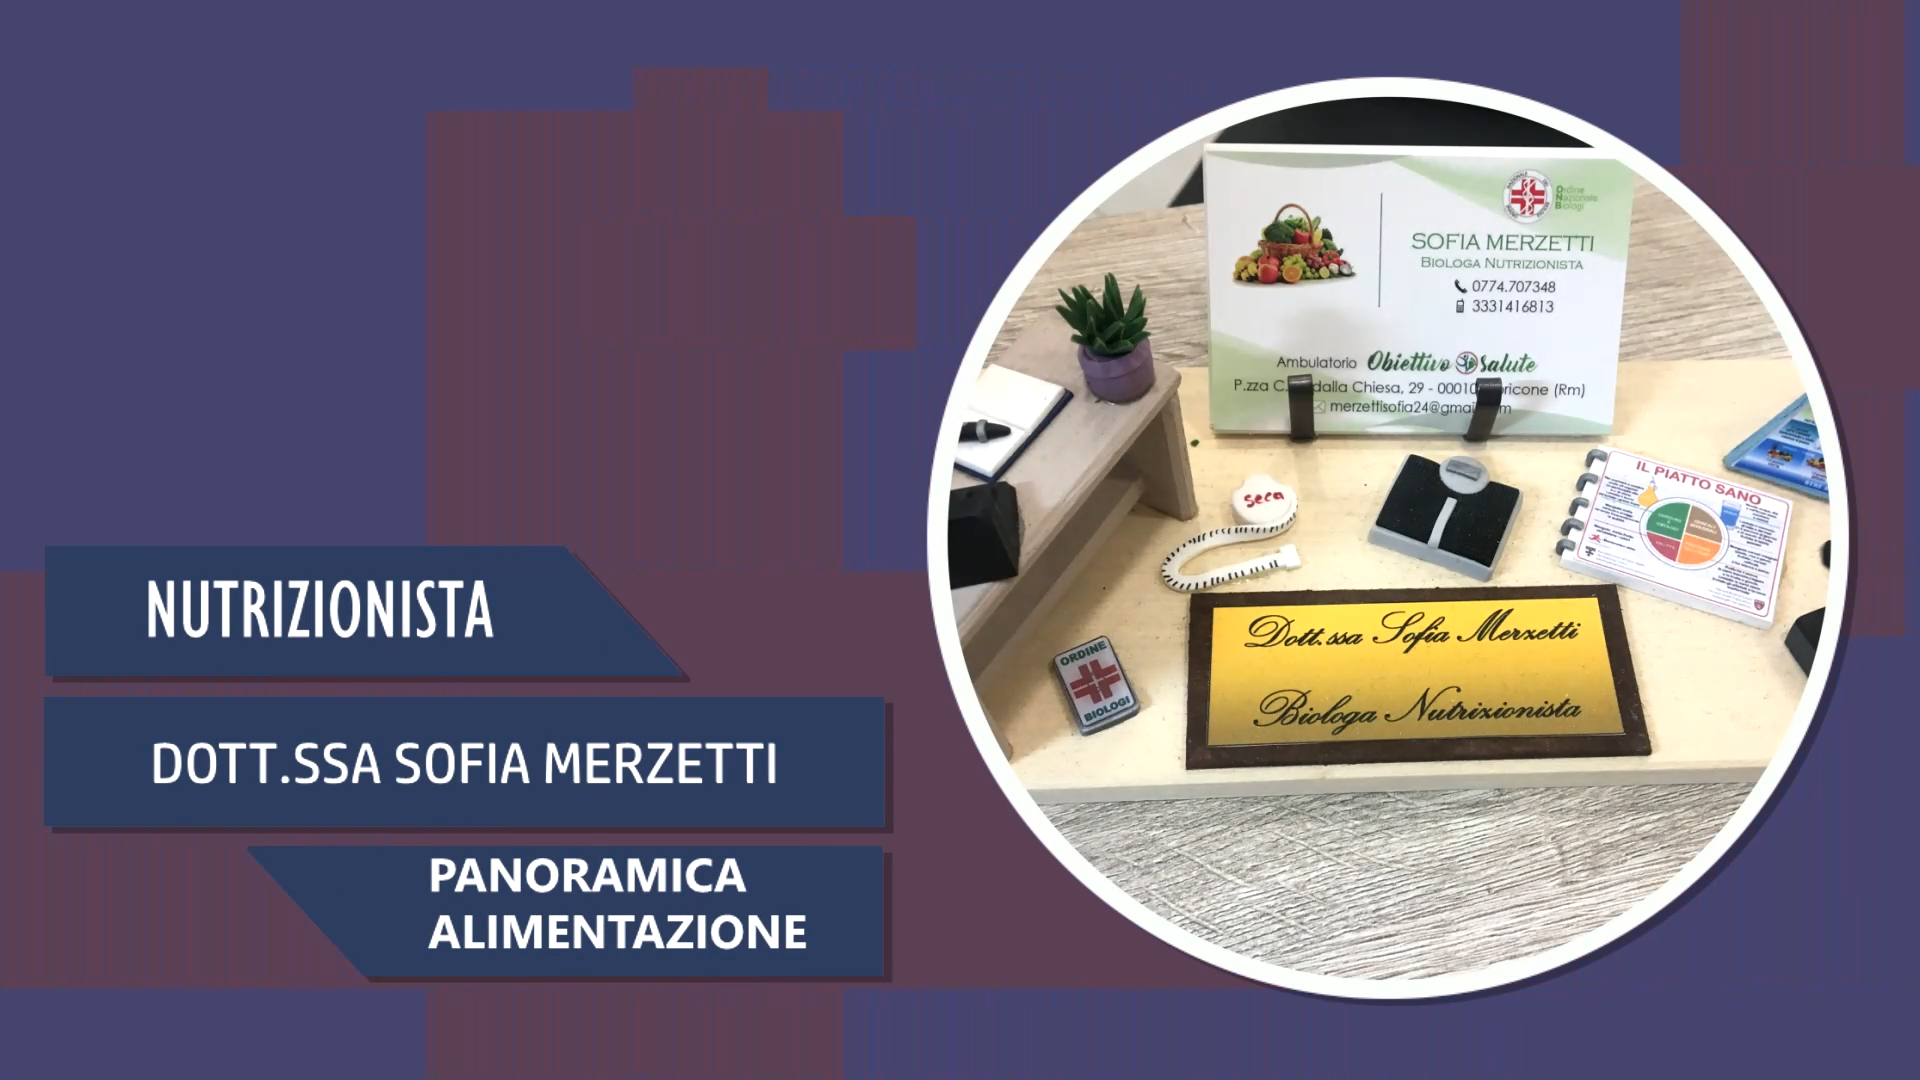 Intervista alla Dott.ssa Sofia Merzetti – Panoramica Alimentazione